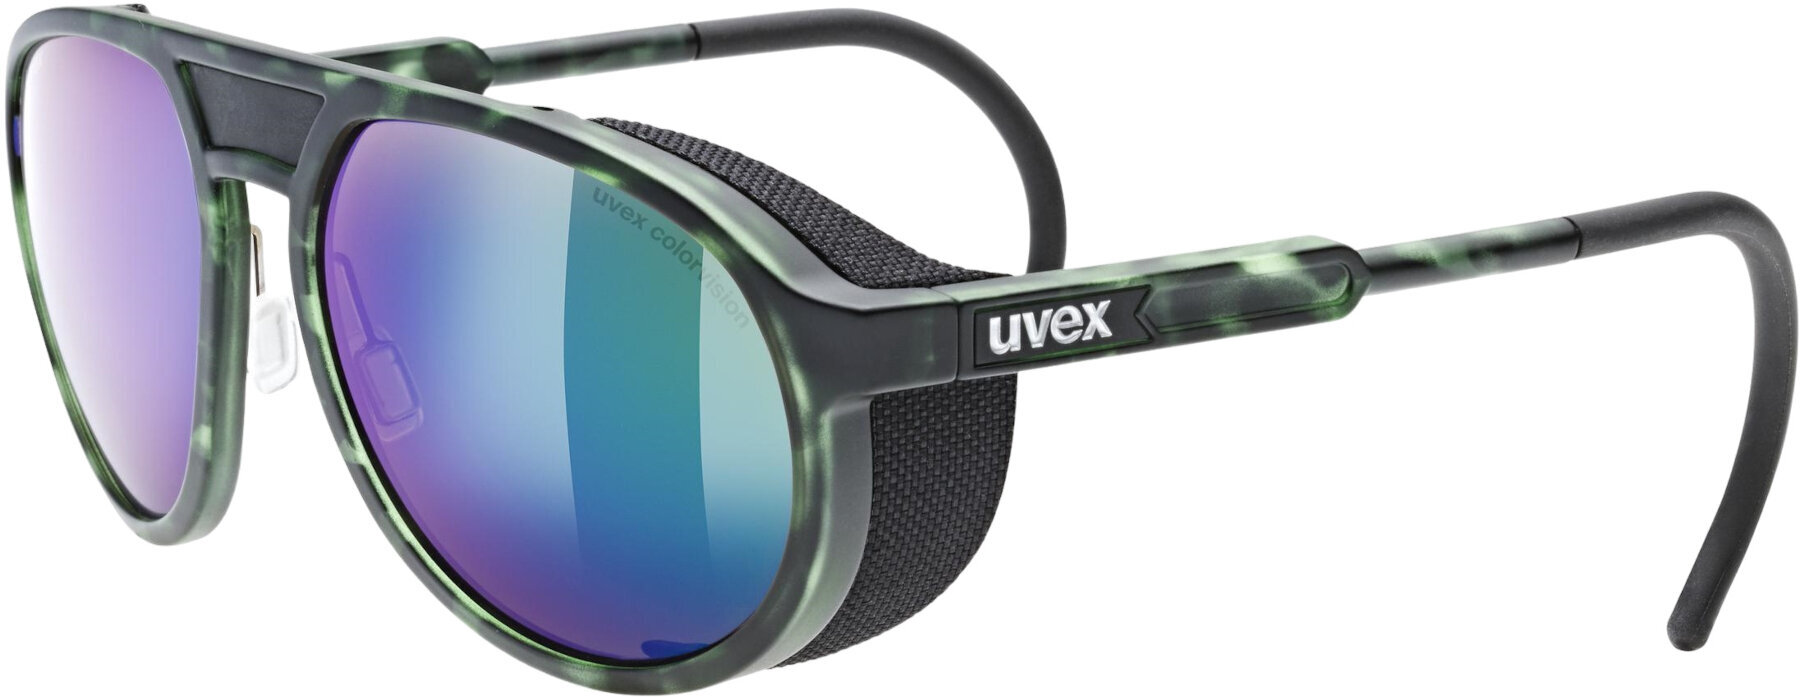 Solglasögon för friluftsliv UVEX MTN Classic CV Green Mat/Tortoise/Colorvision Mirror Green Solglasögon för friluftsliv